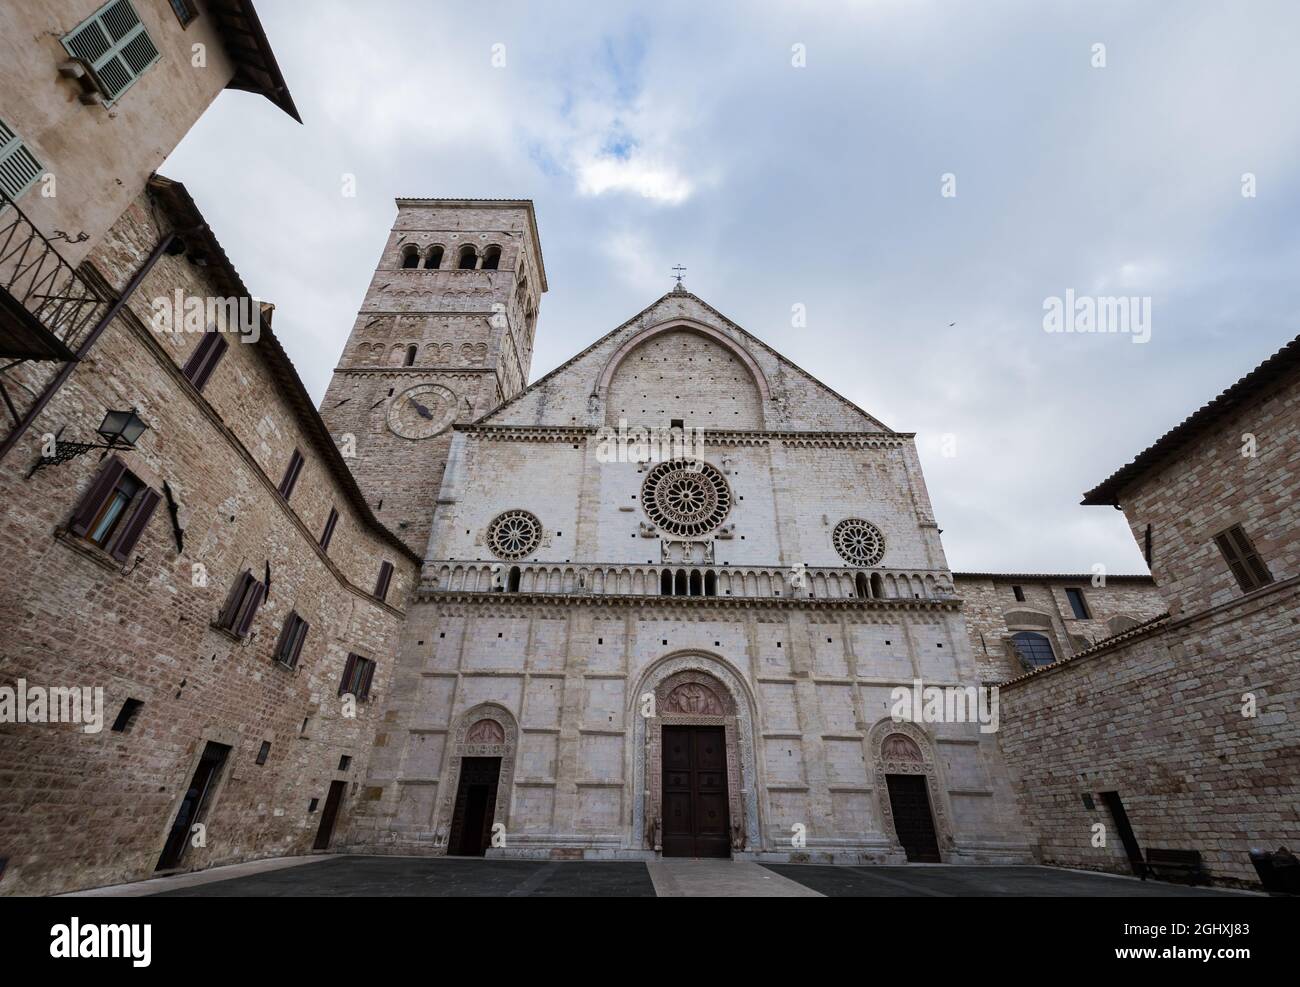 La cattedrale di San Rufino è il luogo principale di culto cattolico nella città di Assisi, la chiesa madre della diocesi di Assisi-Nocera Umbra-Guald Foto Stock